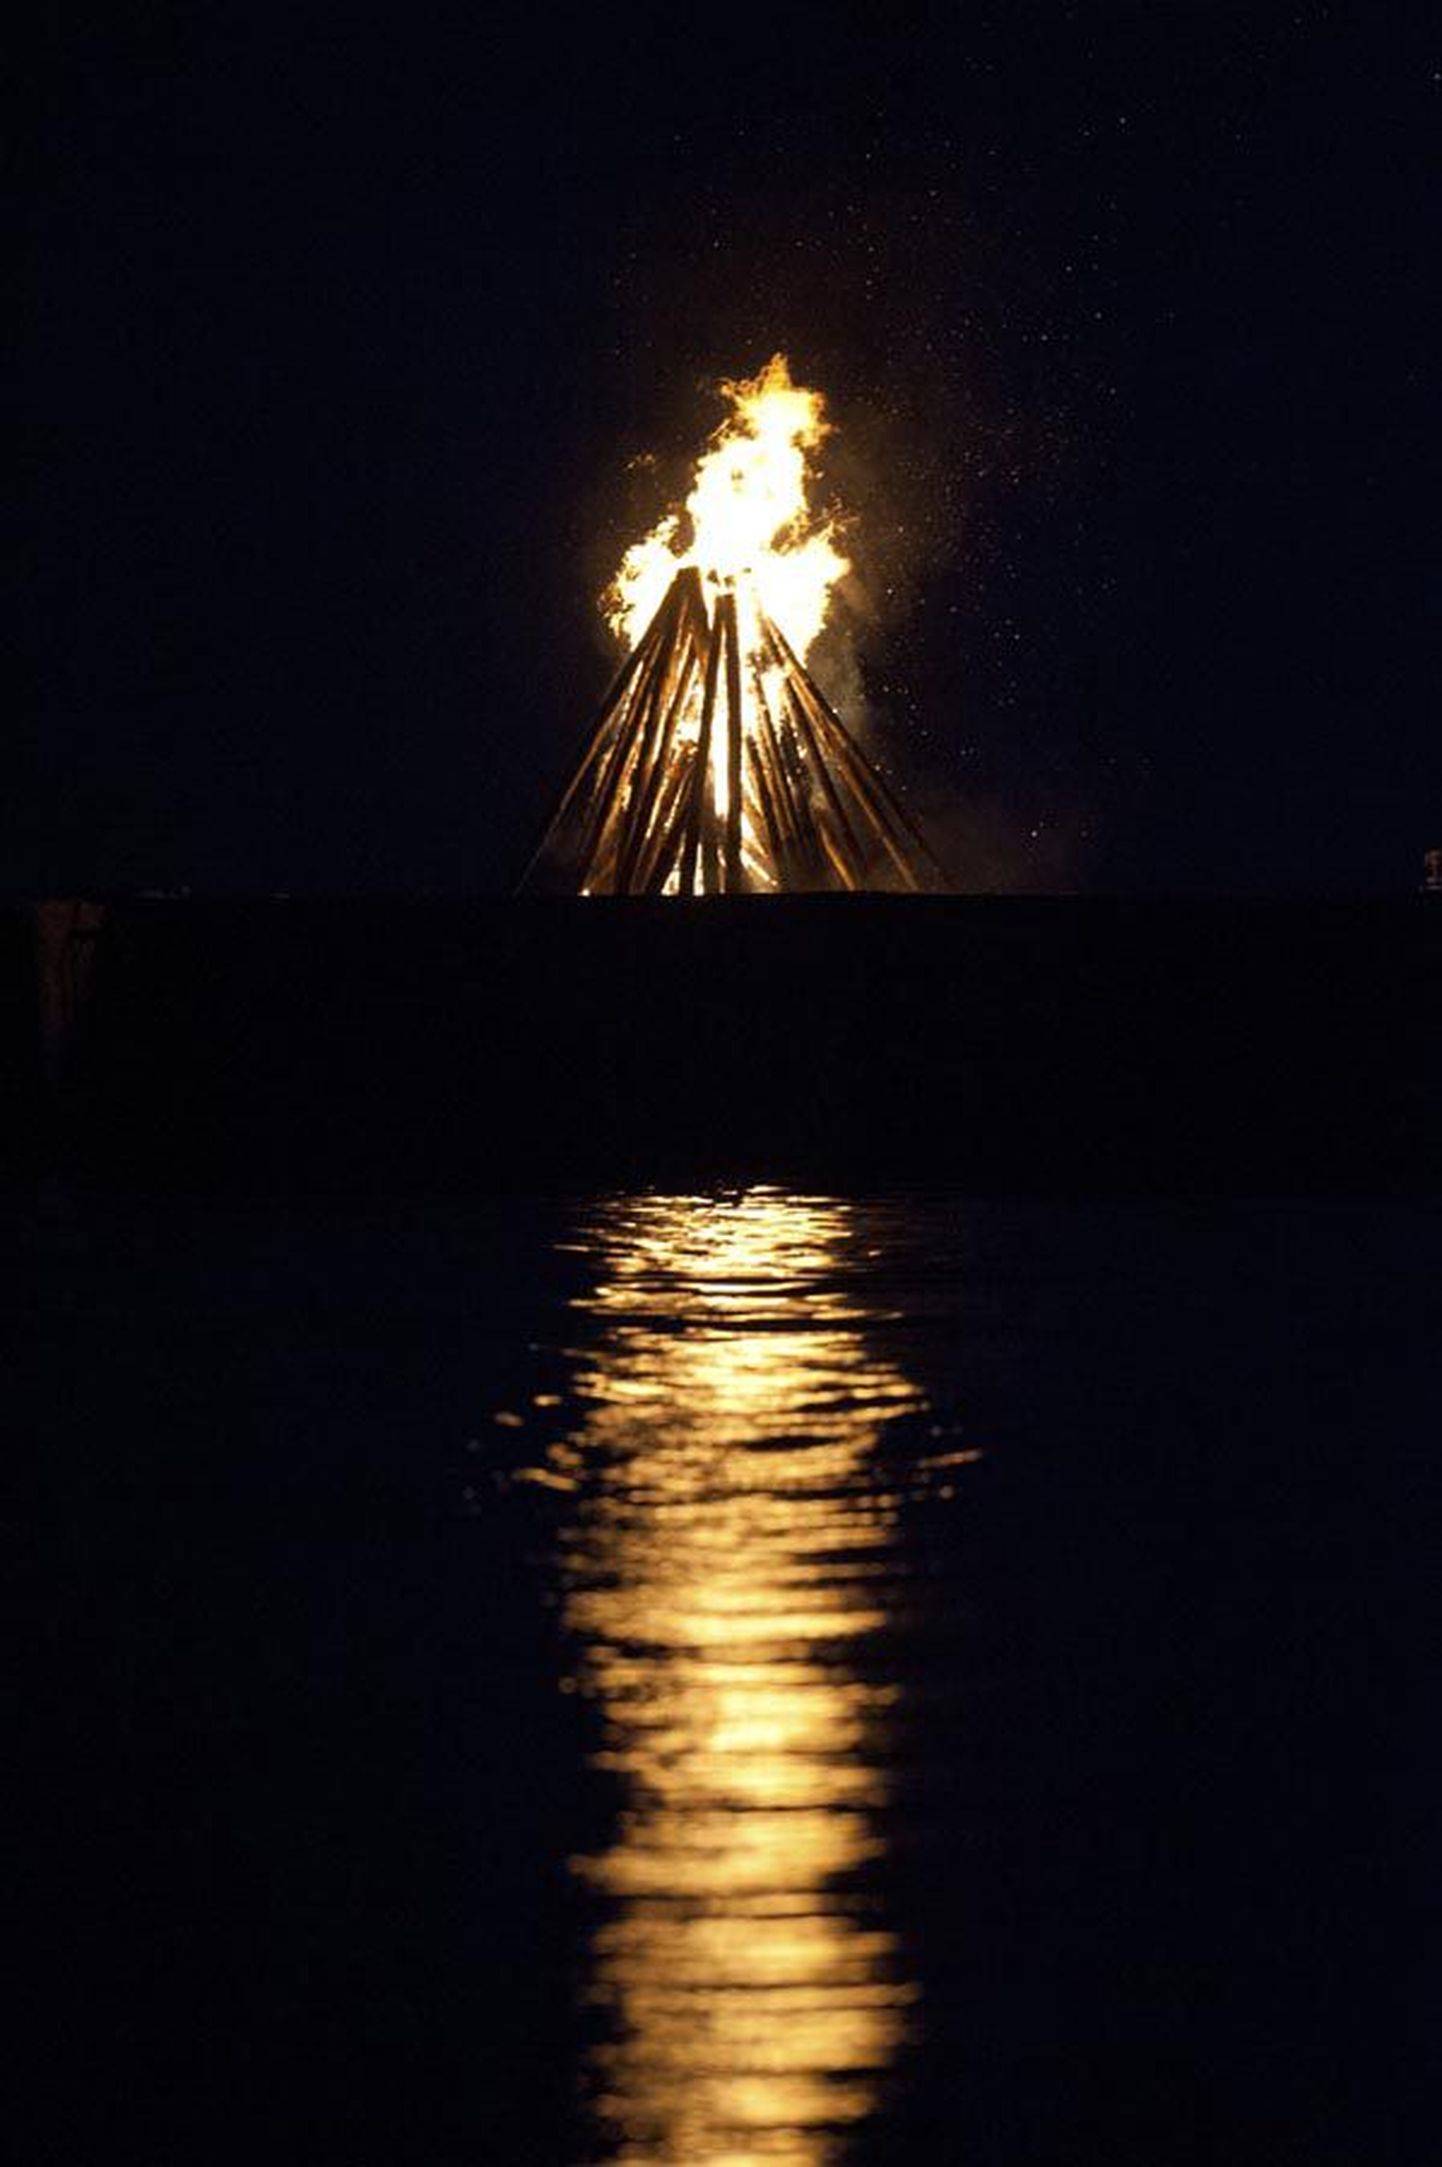 Muinastulede ööl on tavaks teha vee ääres lõkkeid. Sadu lõkkeid läidetakse küll Eesti rannajoonel, aga Viljandimaalt oli sündmuse kodulehel eile kirjas vaid üks tuletegemise koht, Võrtsjärve ääres poldril. Foto on illustreeriv.